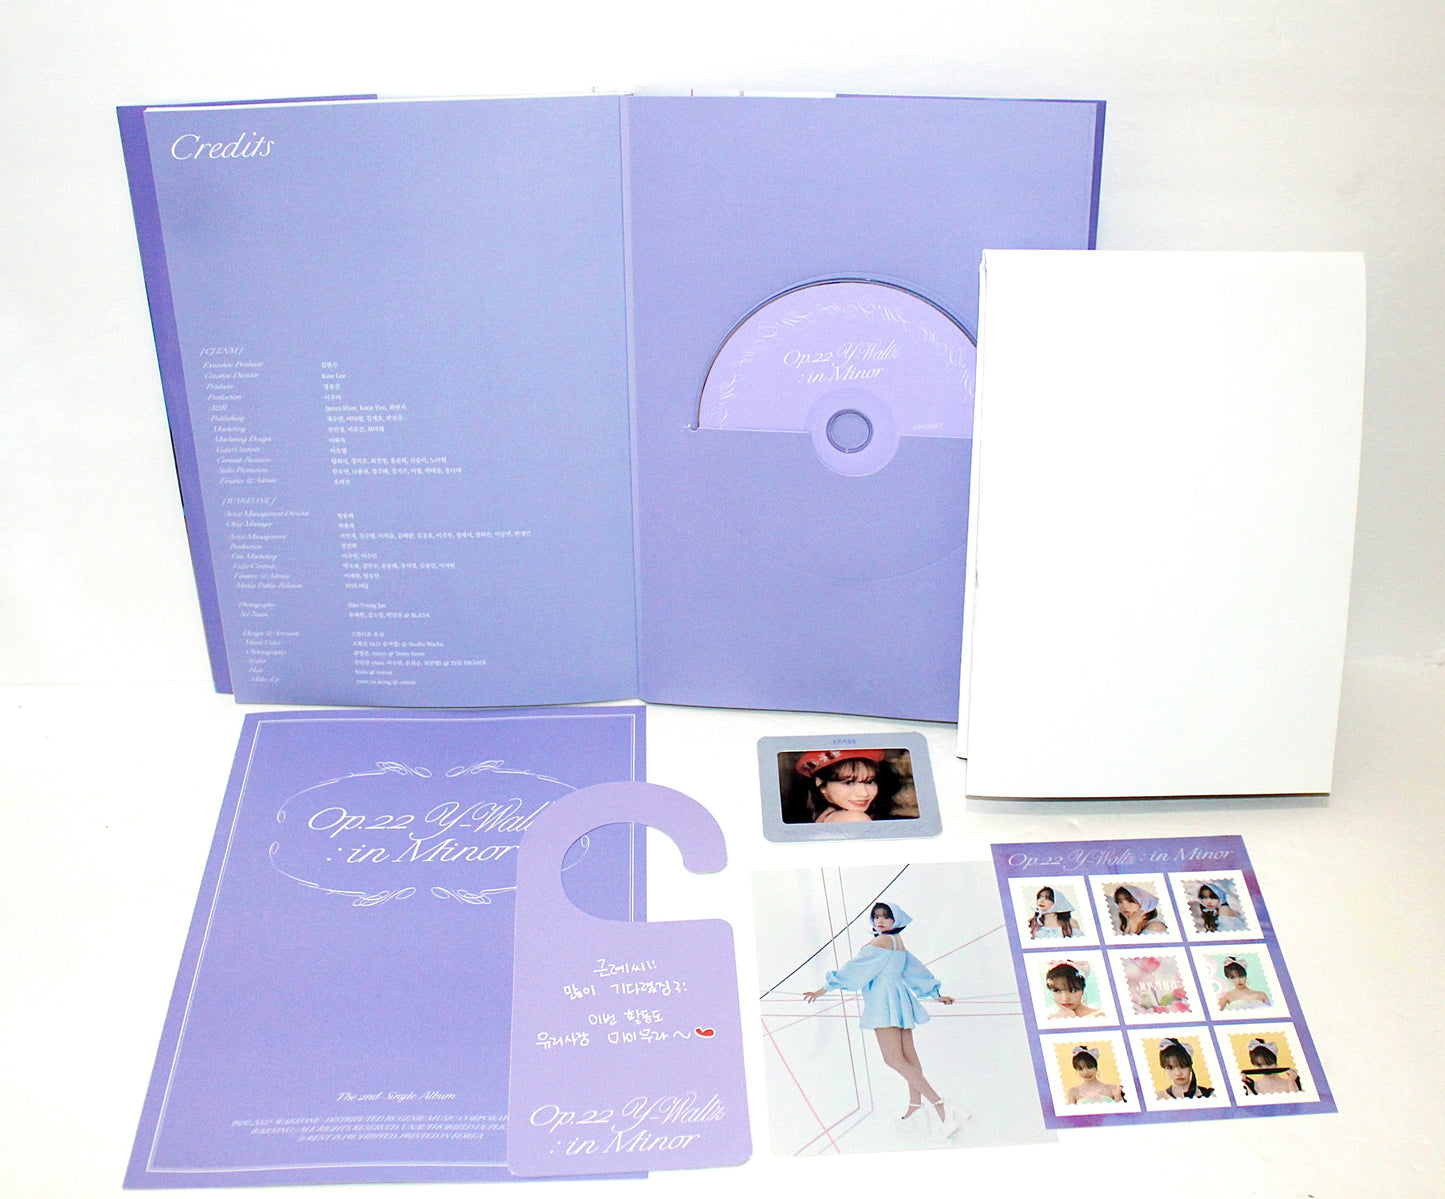 JO YURI 2nd Single Album - OP.22 Y-Waltz: in Minor | Inside Ver.